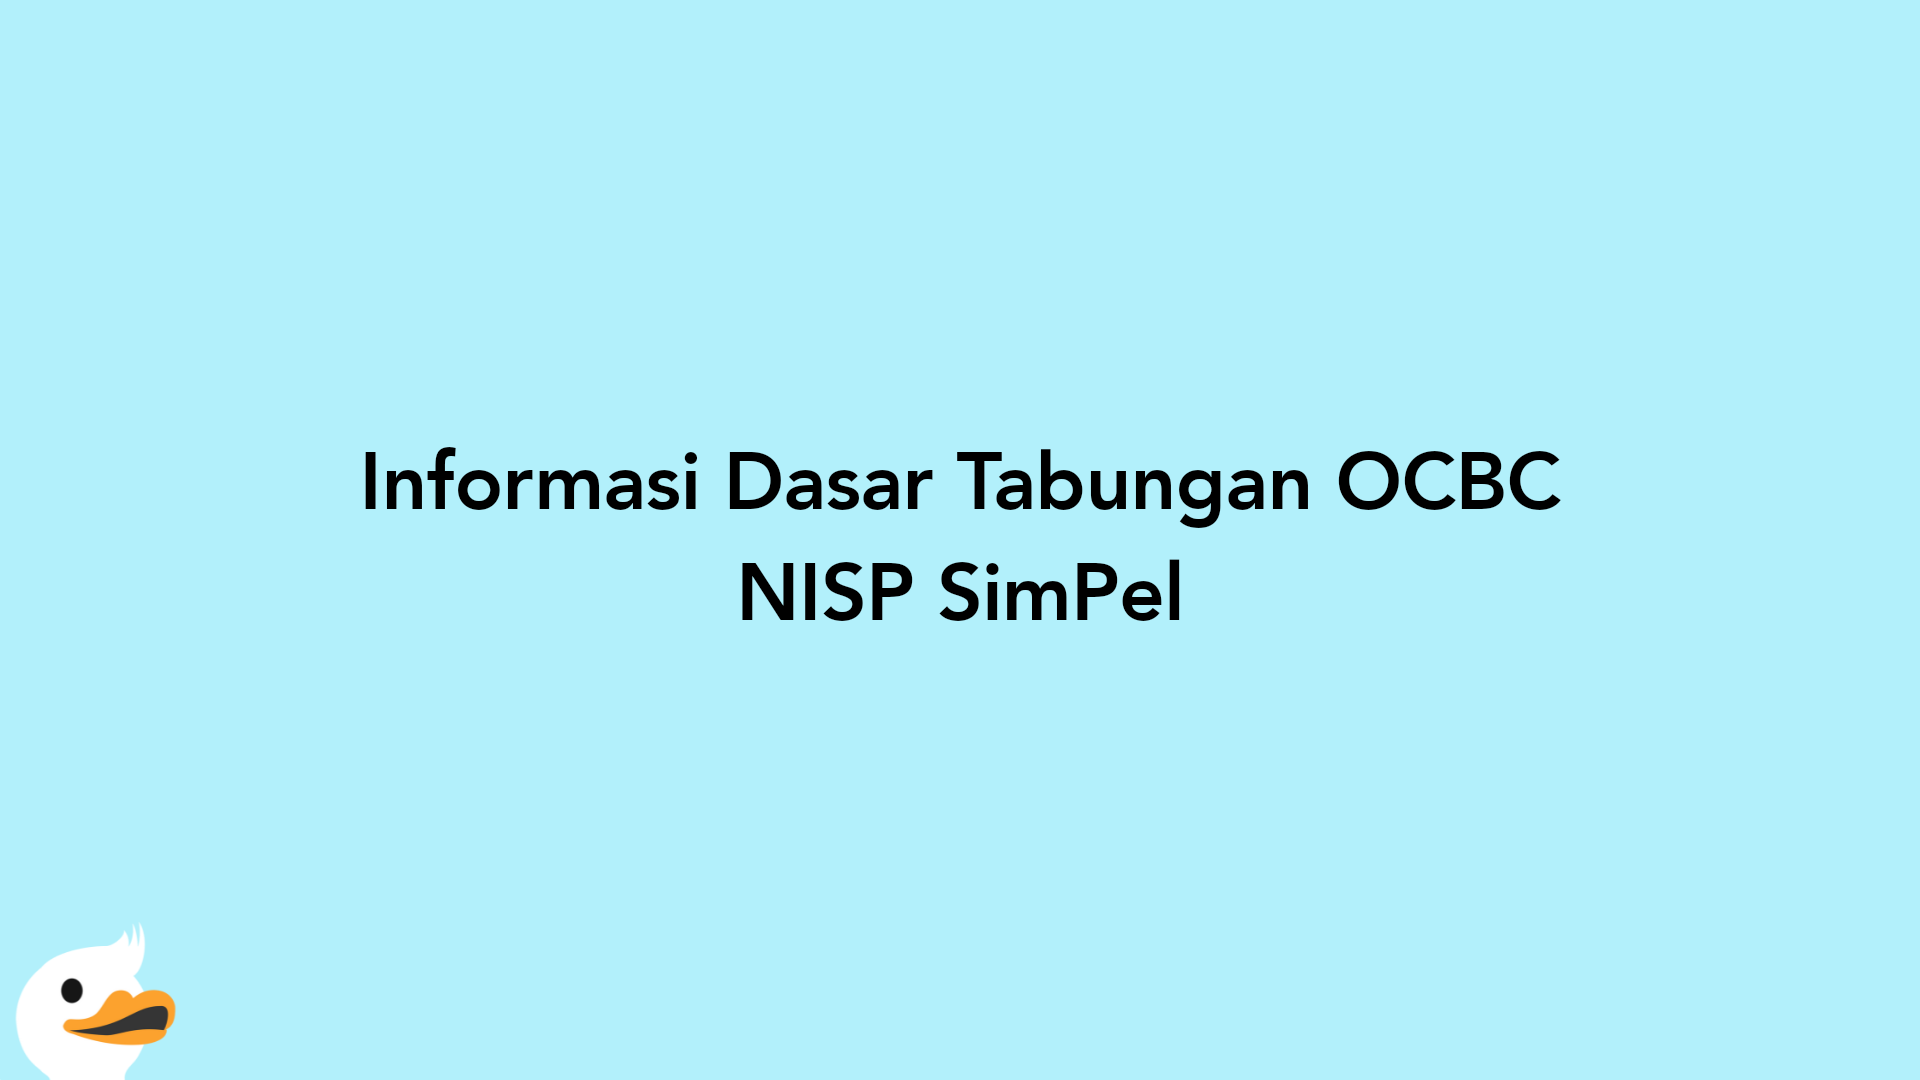 Informasi Dasar Tabungan OCBC NISP SimPel